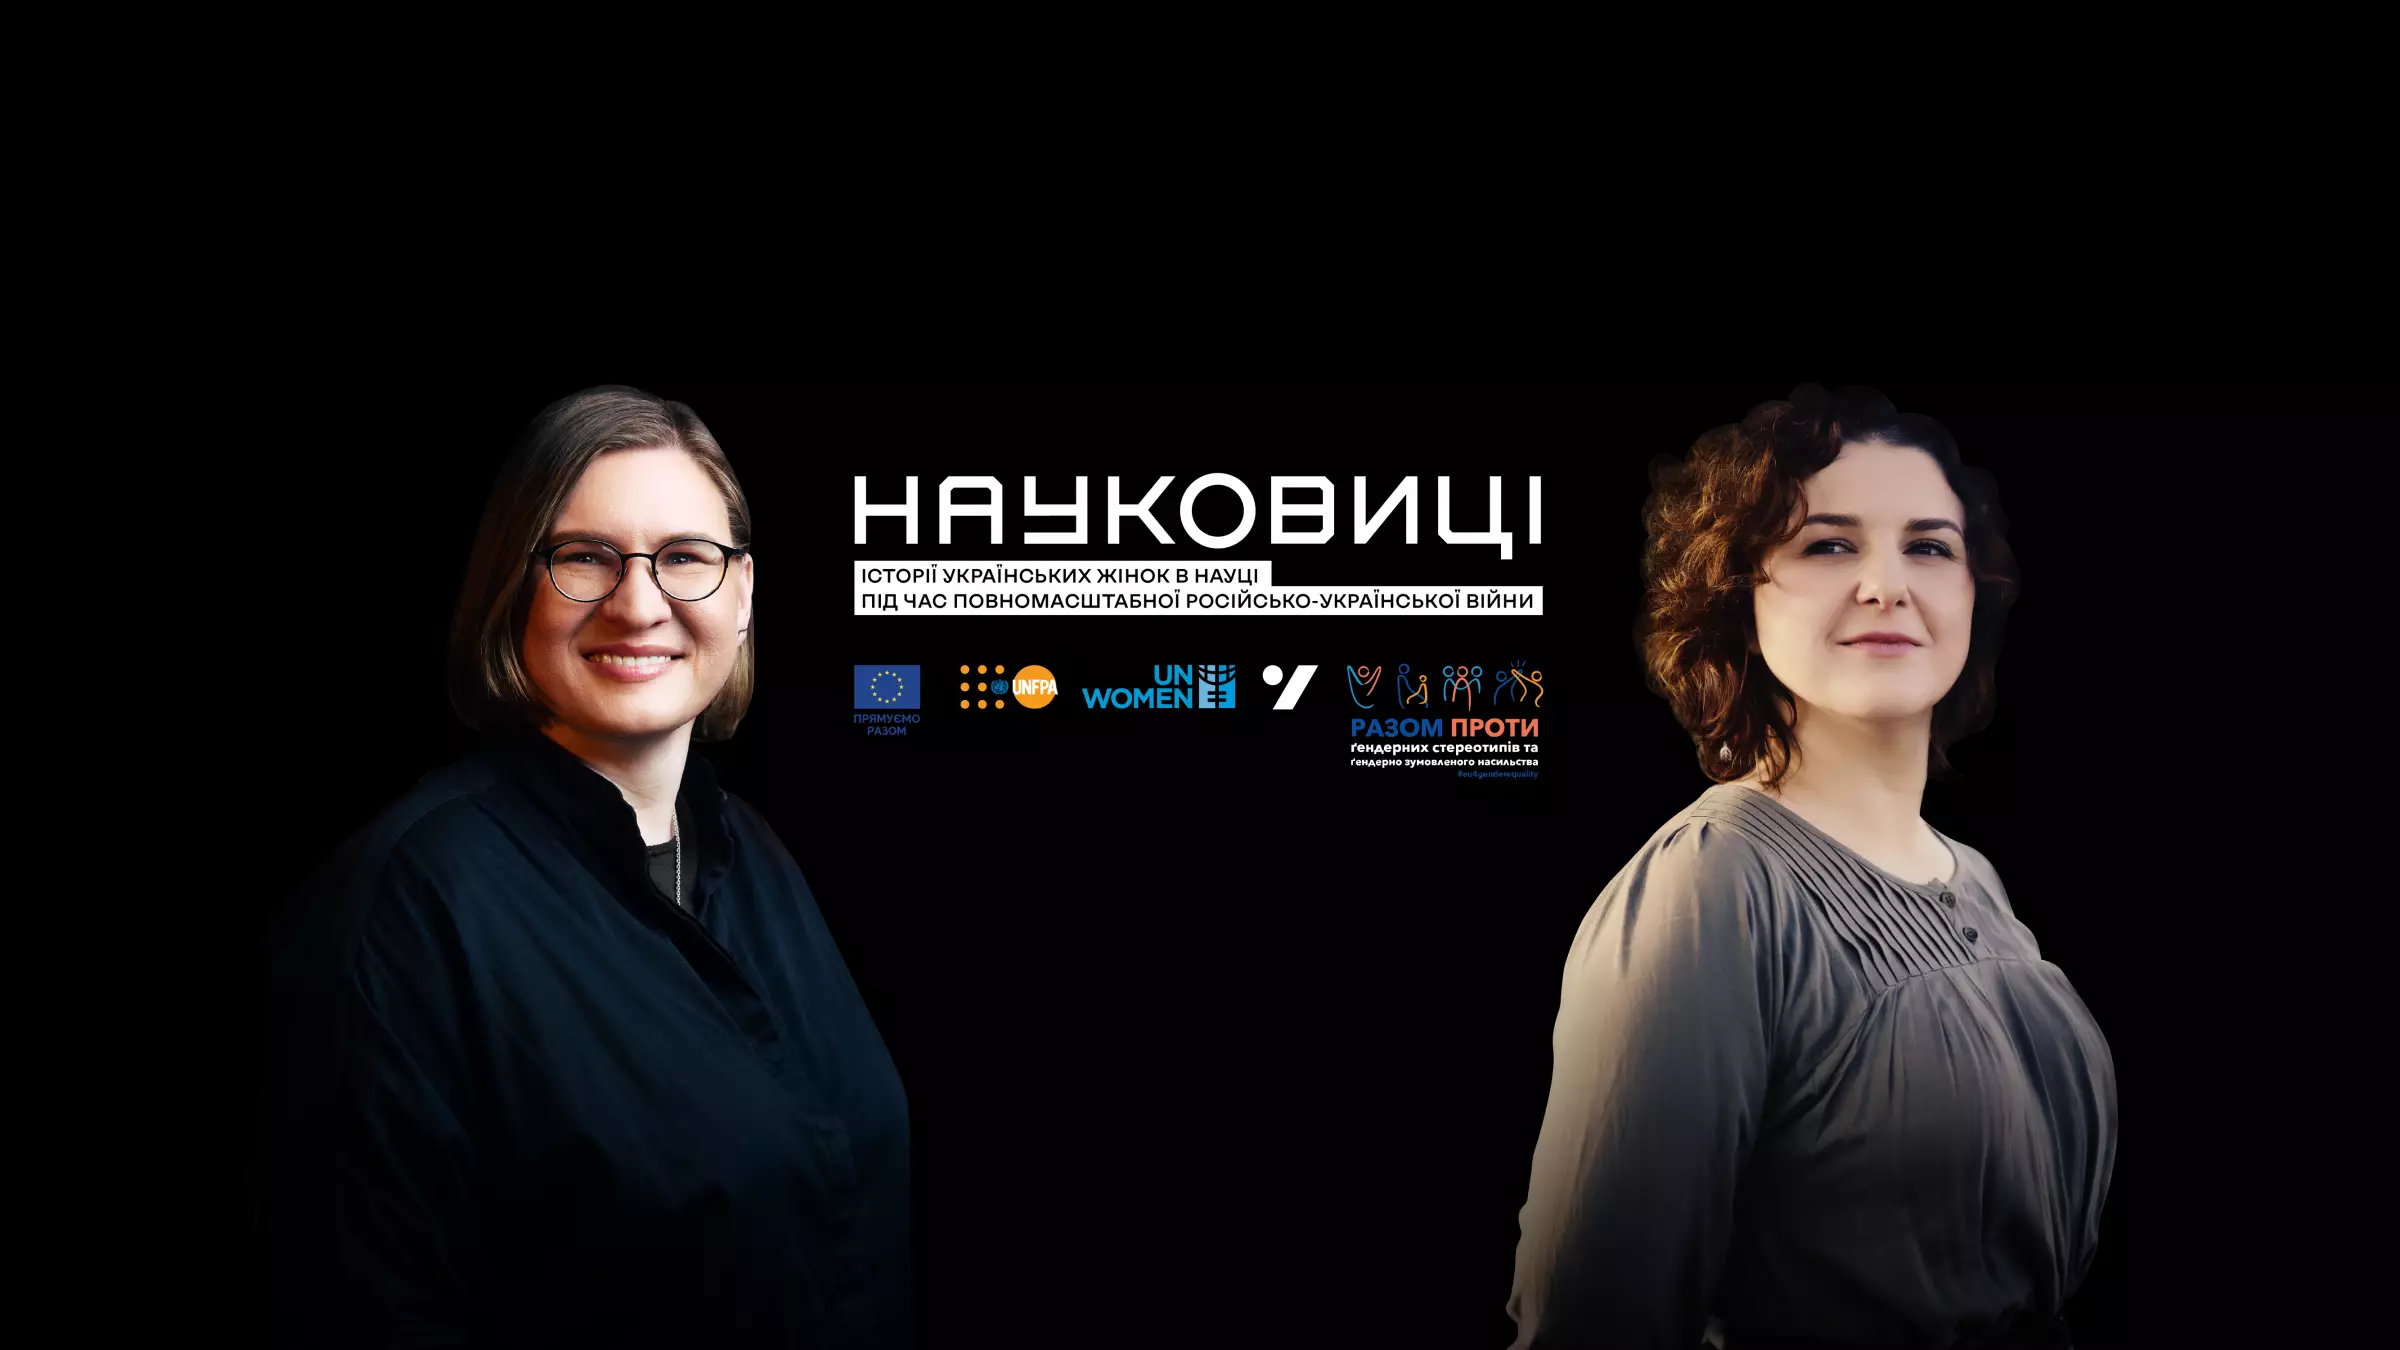 «Науковиці»: Відбулася онлайн-прем’єра документальних відео про українських жінок у науці